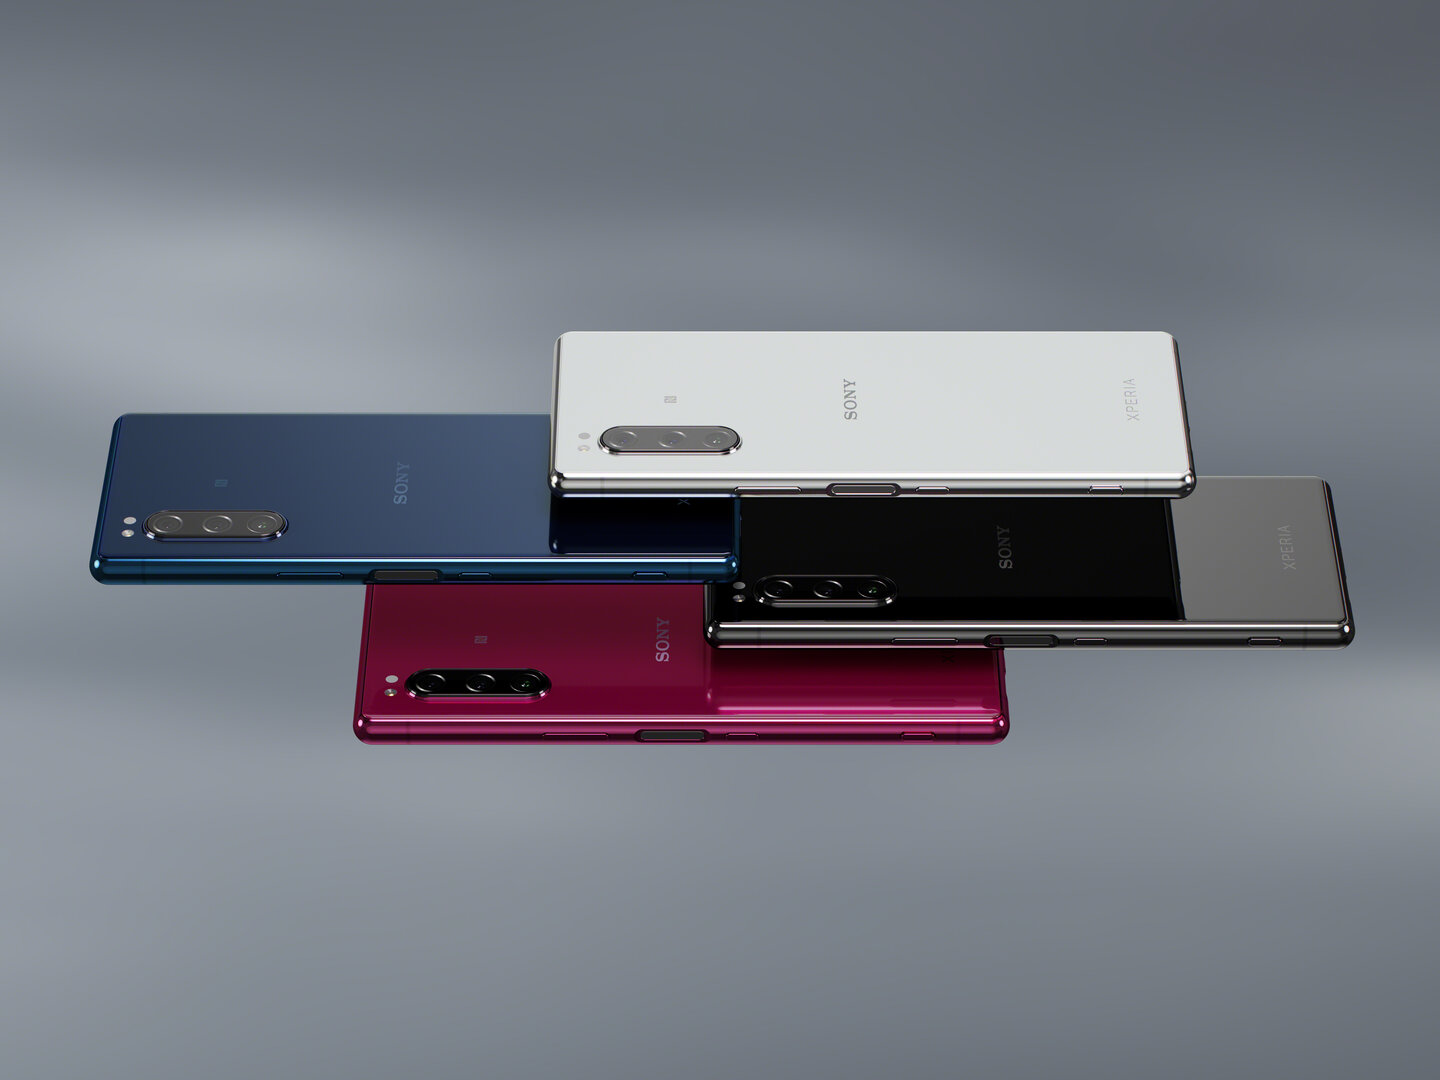 Sony Xperia 5 выпускается в черном, сером, синем и красном цветах.